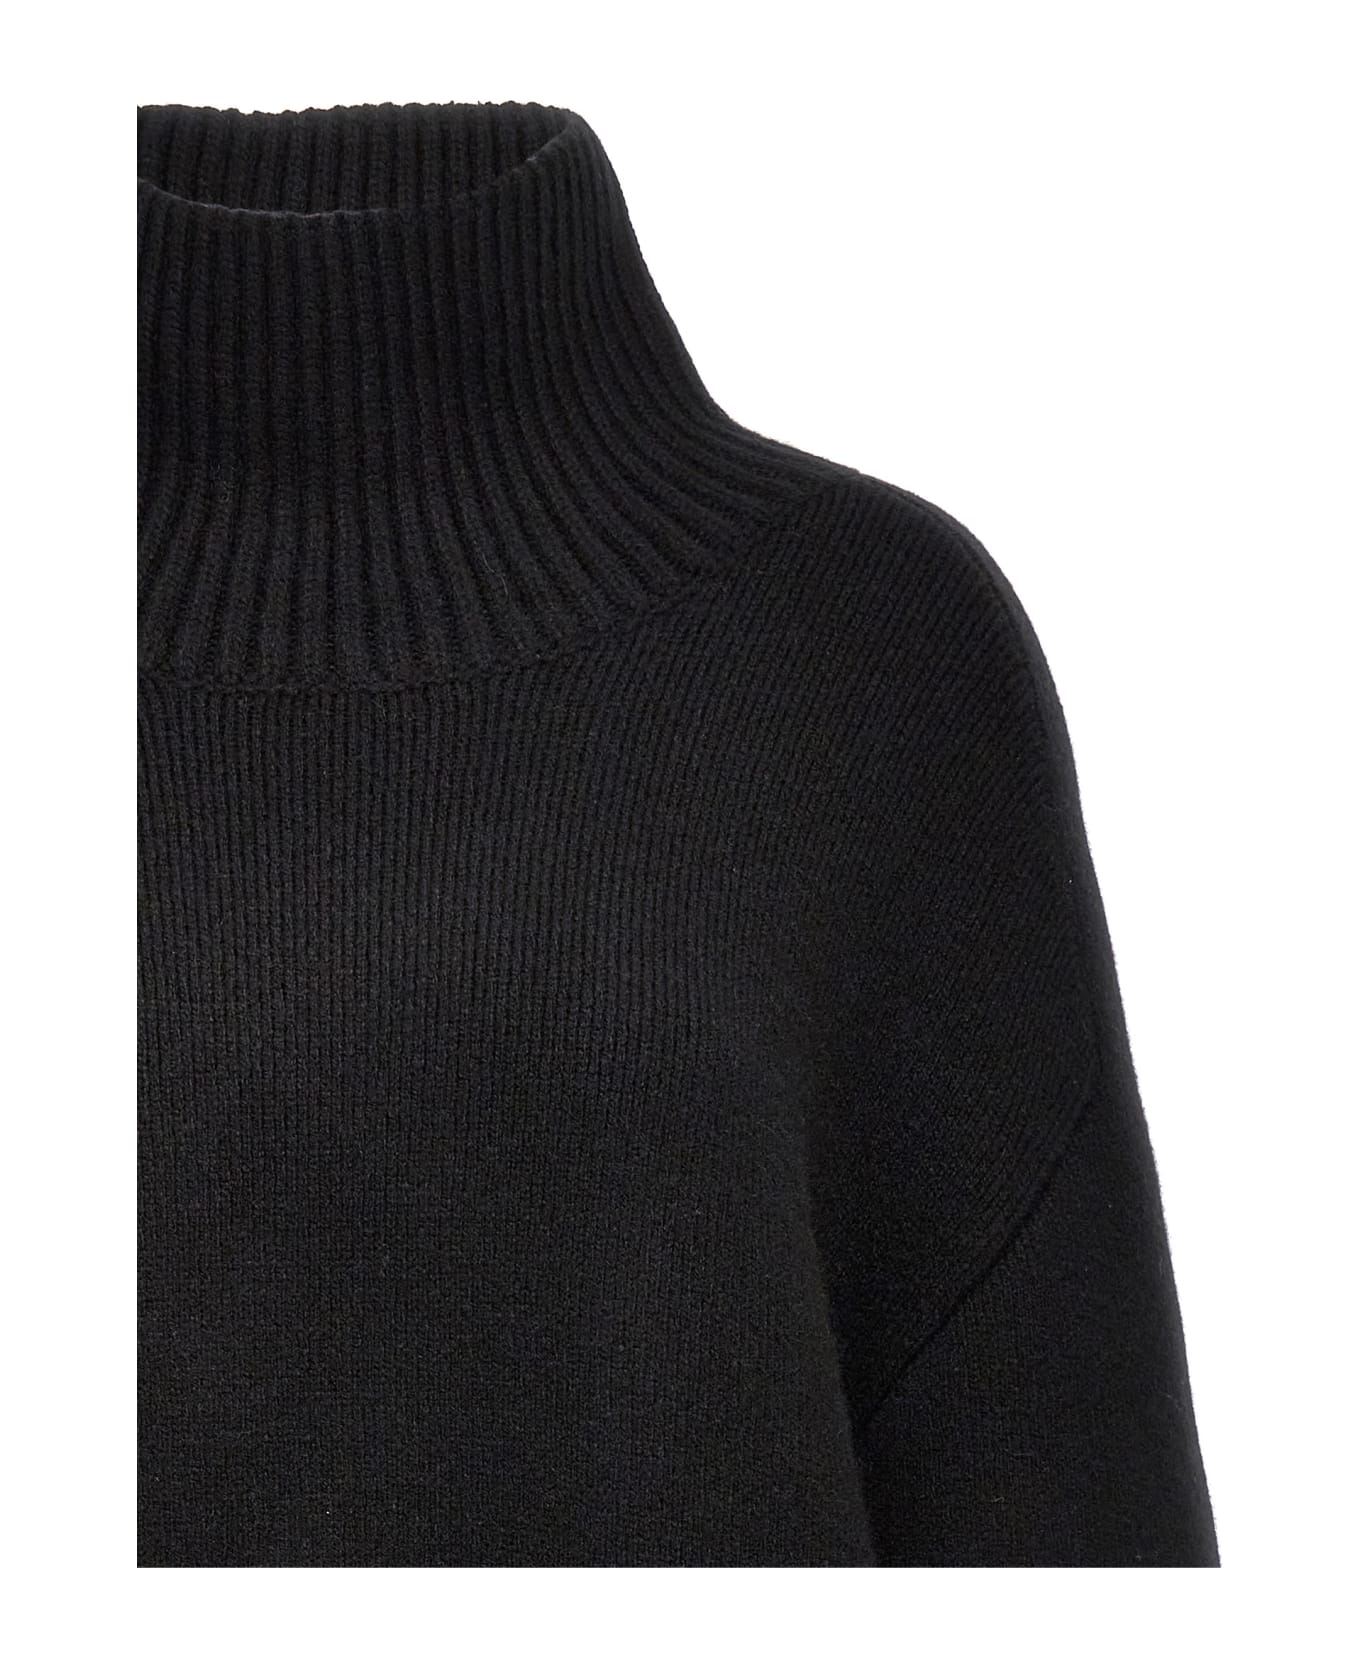 Khaite 'landen' Sweater - Black